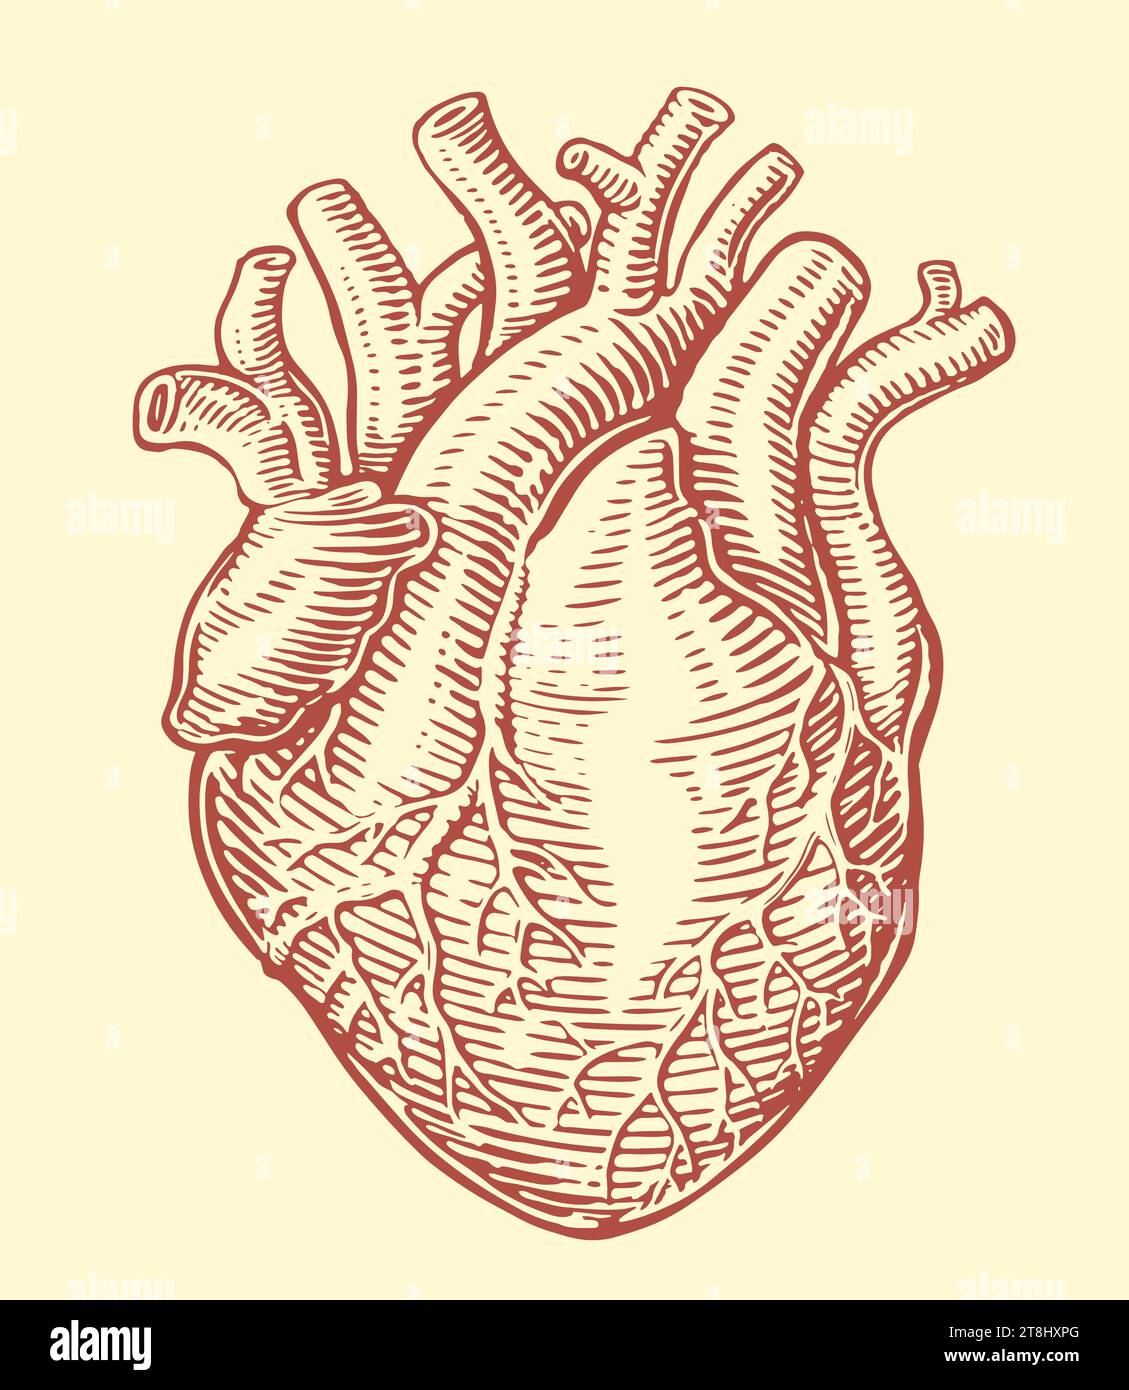 Cuore umano con sistema venoso anatomico. Disegno a mano illustrazione vettoriale vintage Illustrazione Vettoriale